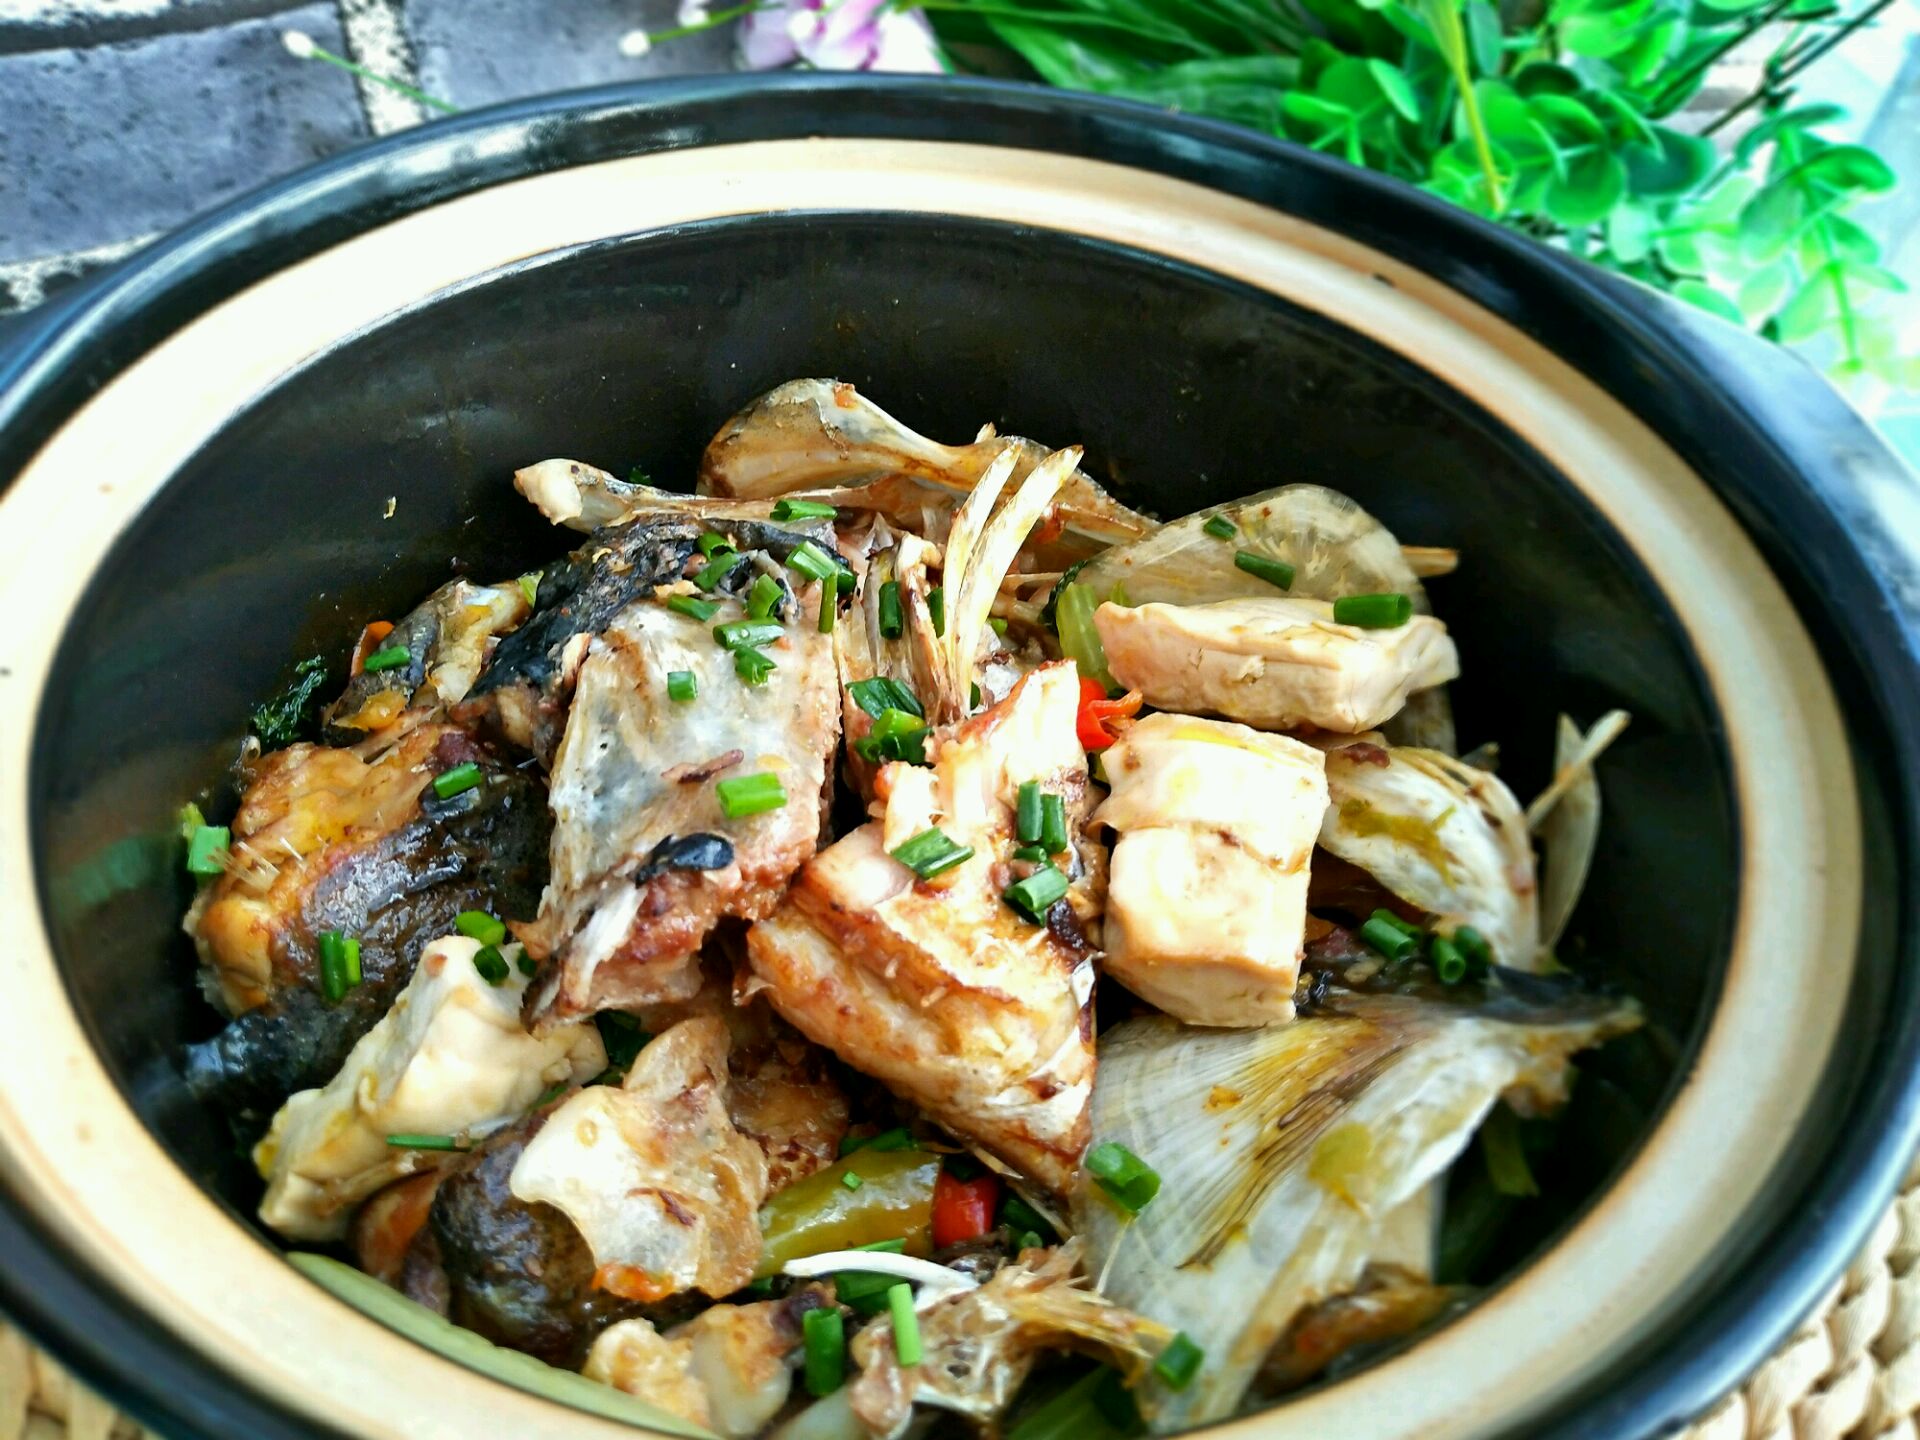 砂锅鸡煲,砂锅鸡煲的家常做法 - 美食杰砂锅鸡煲做法大全